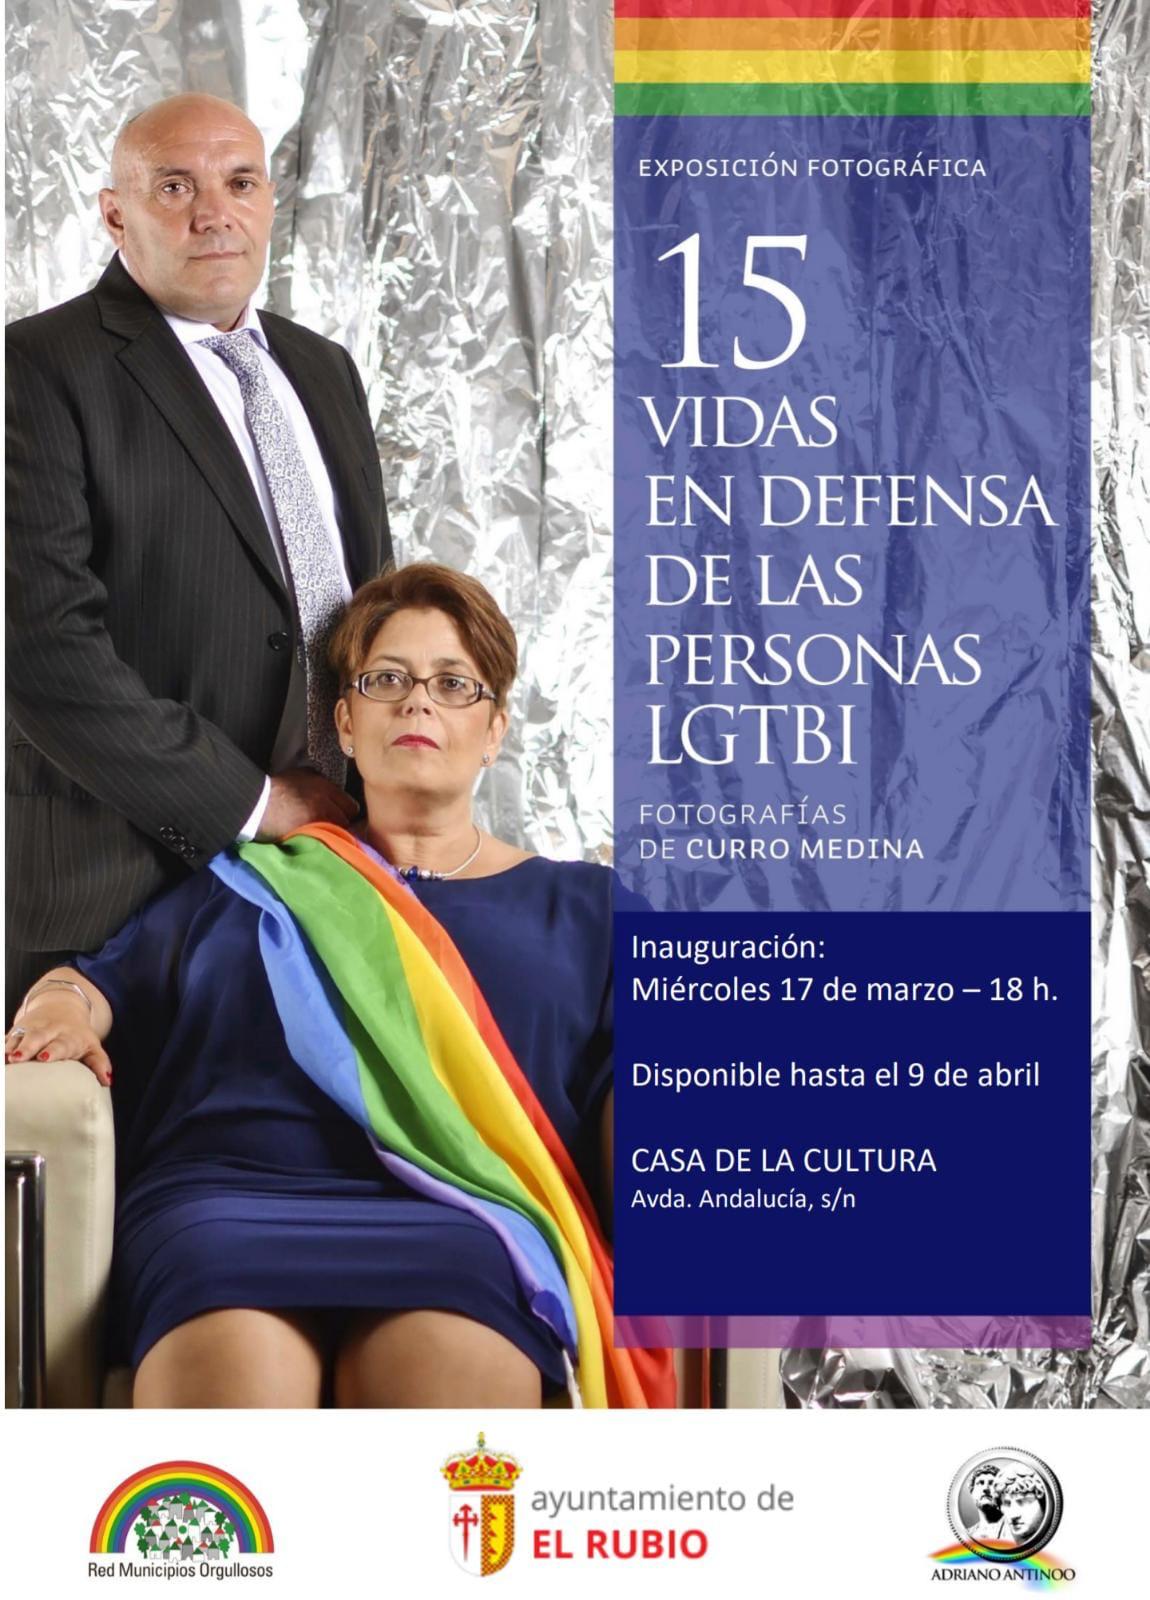 Exposición fotográfica 15 VIDAS EN DEFENSA DE LAS PERSONAS LGTBI